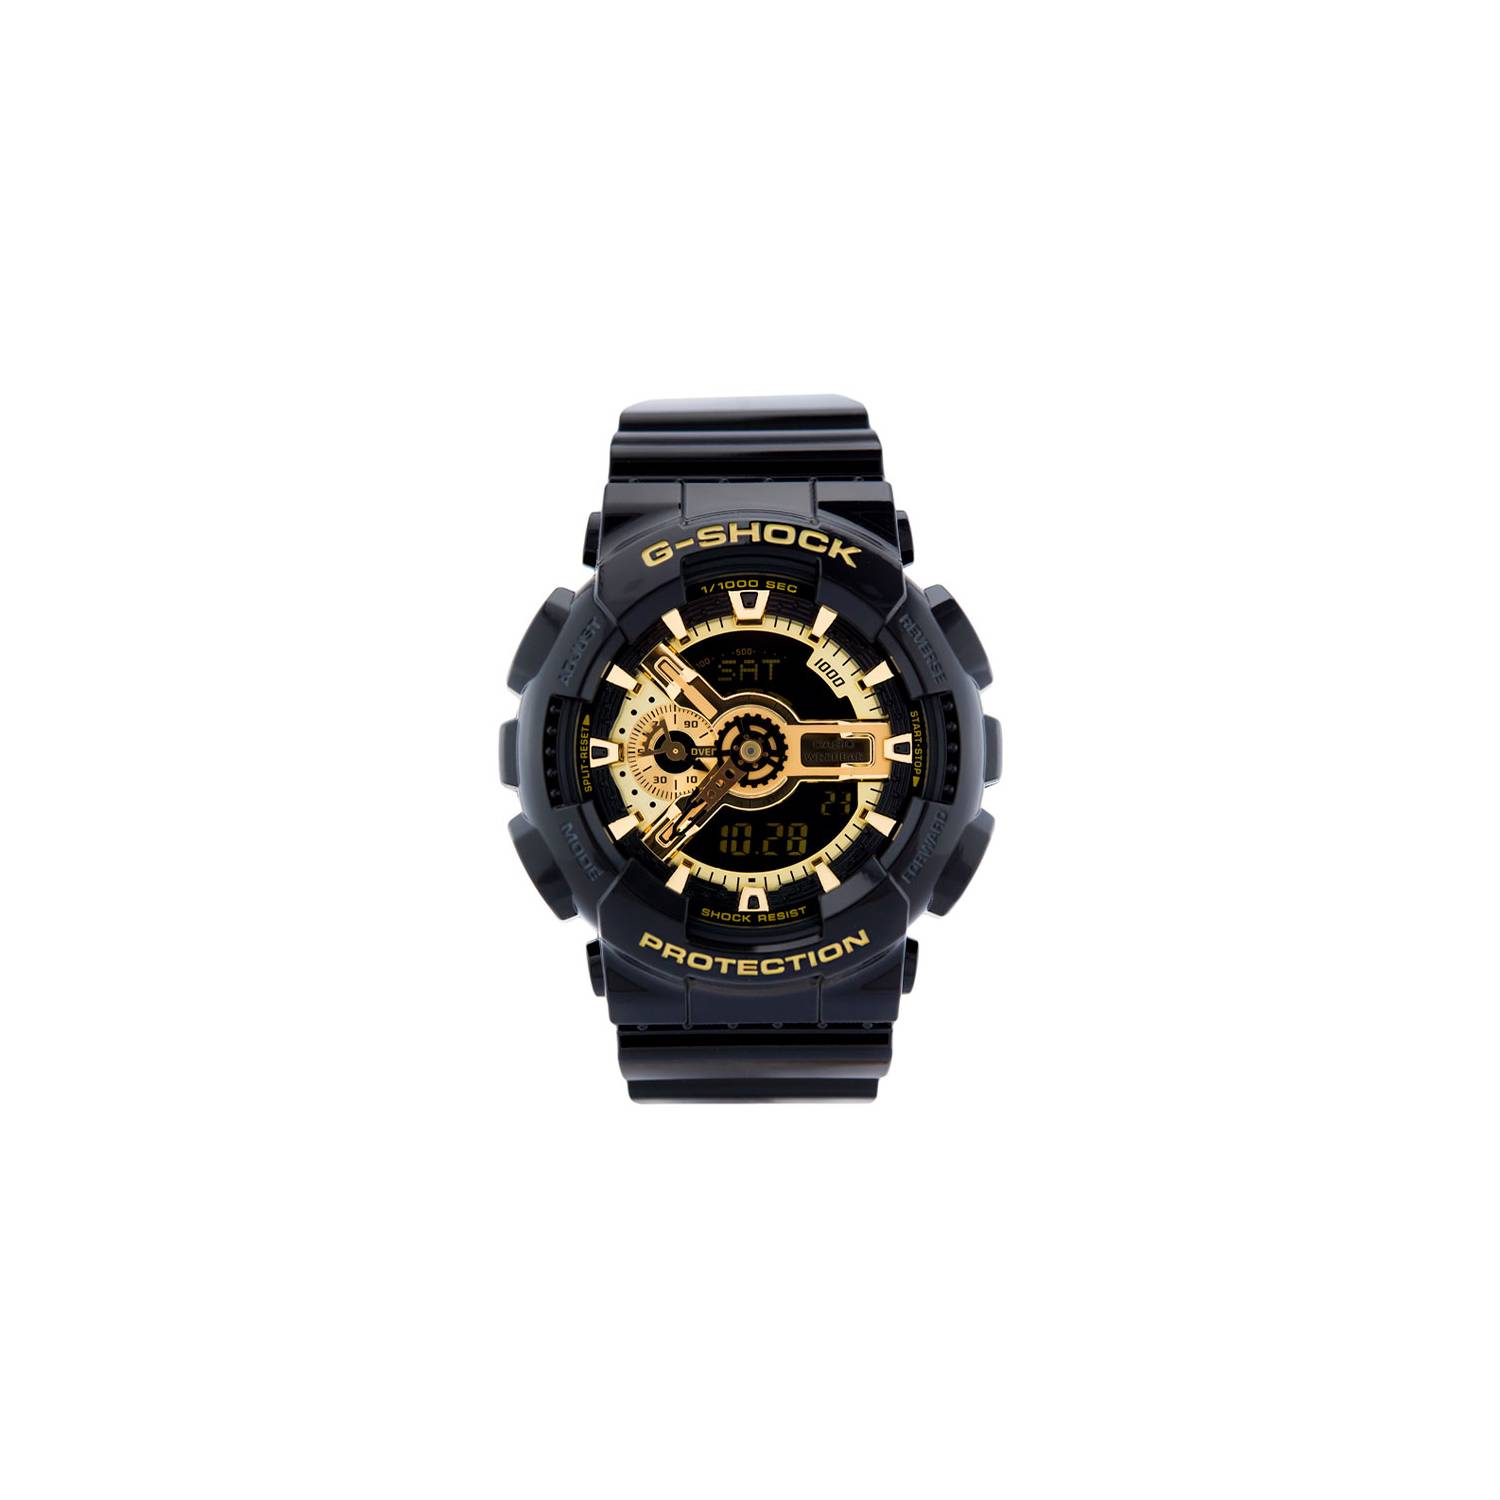 Reloj Casio G-Shock Hombre Analógico y Digital Negro y Rojo GA-110HR-1AER